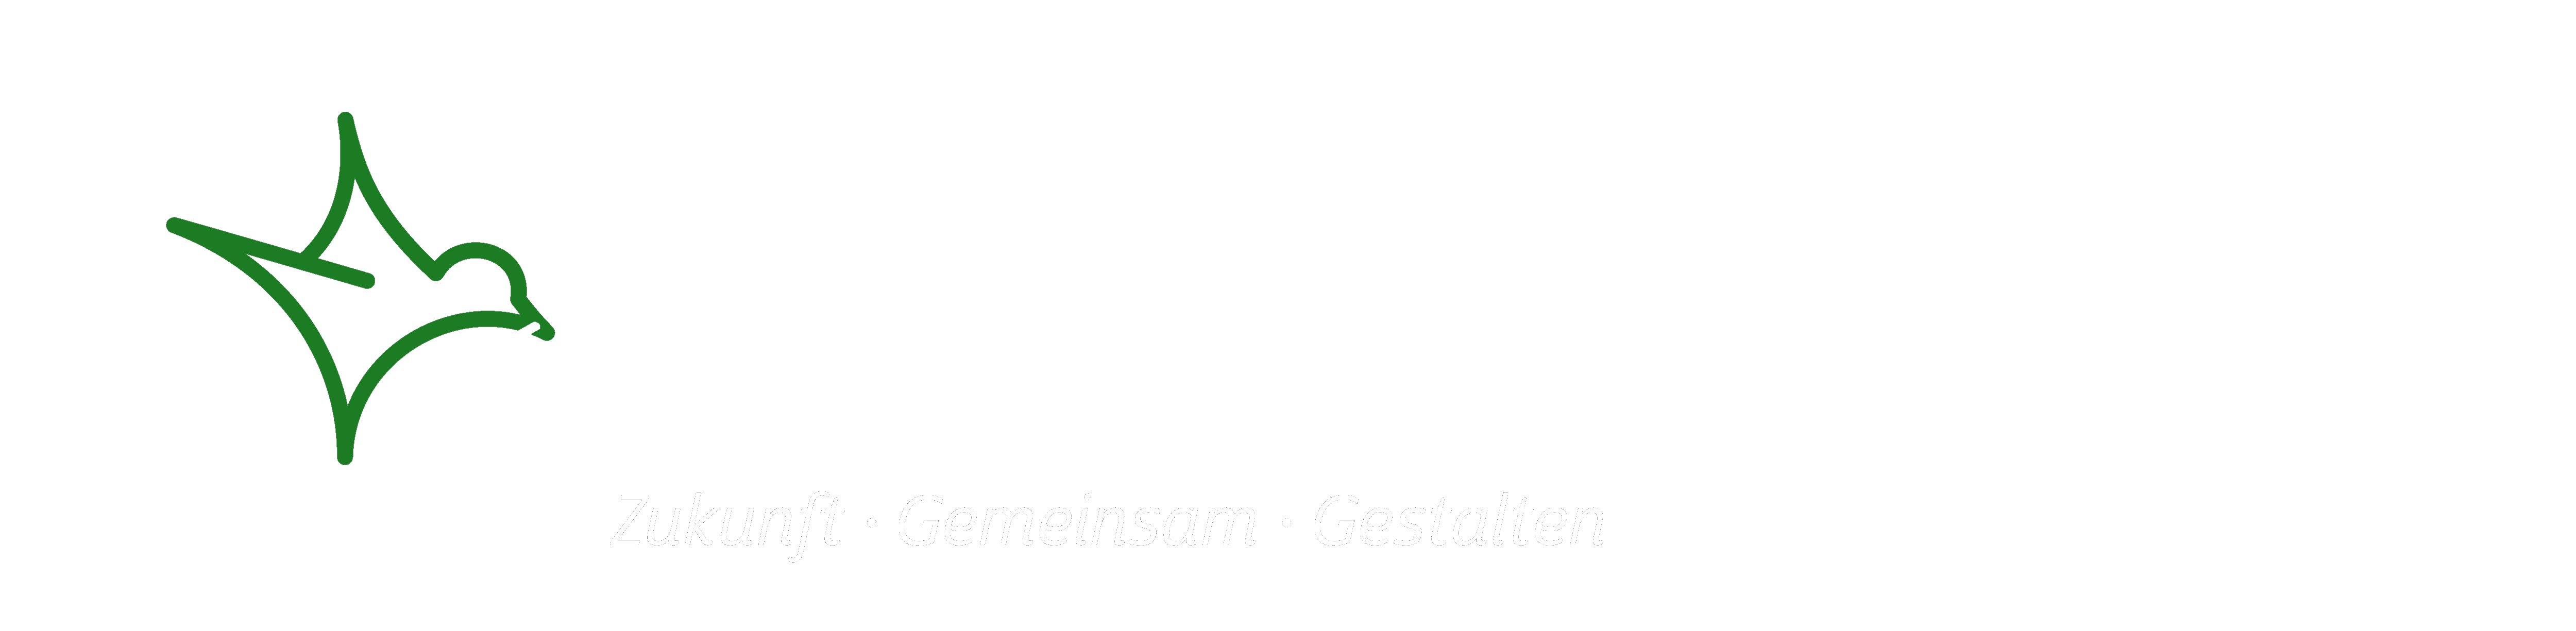 Grüner Spatz Logo